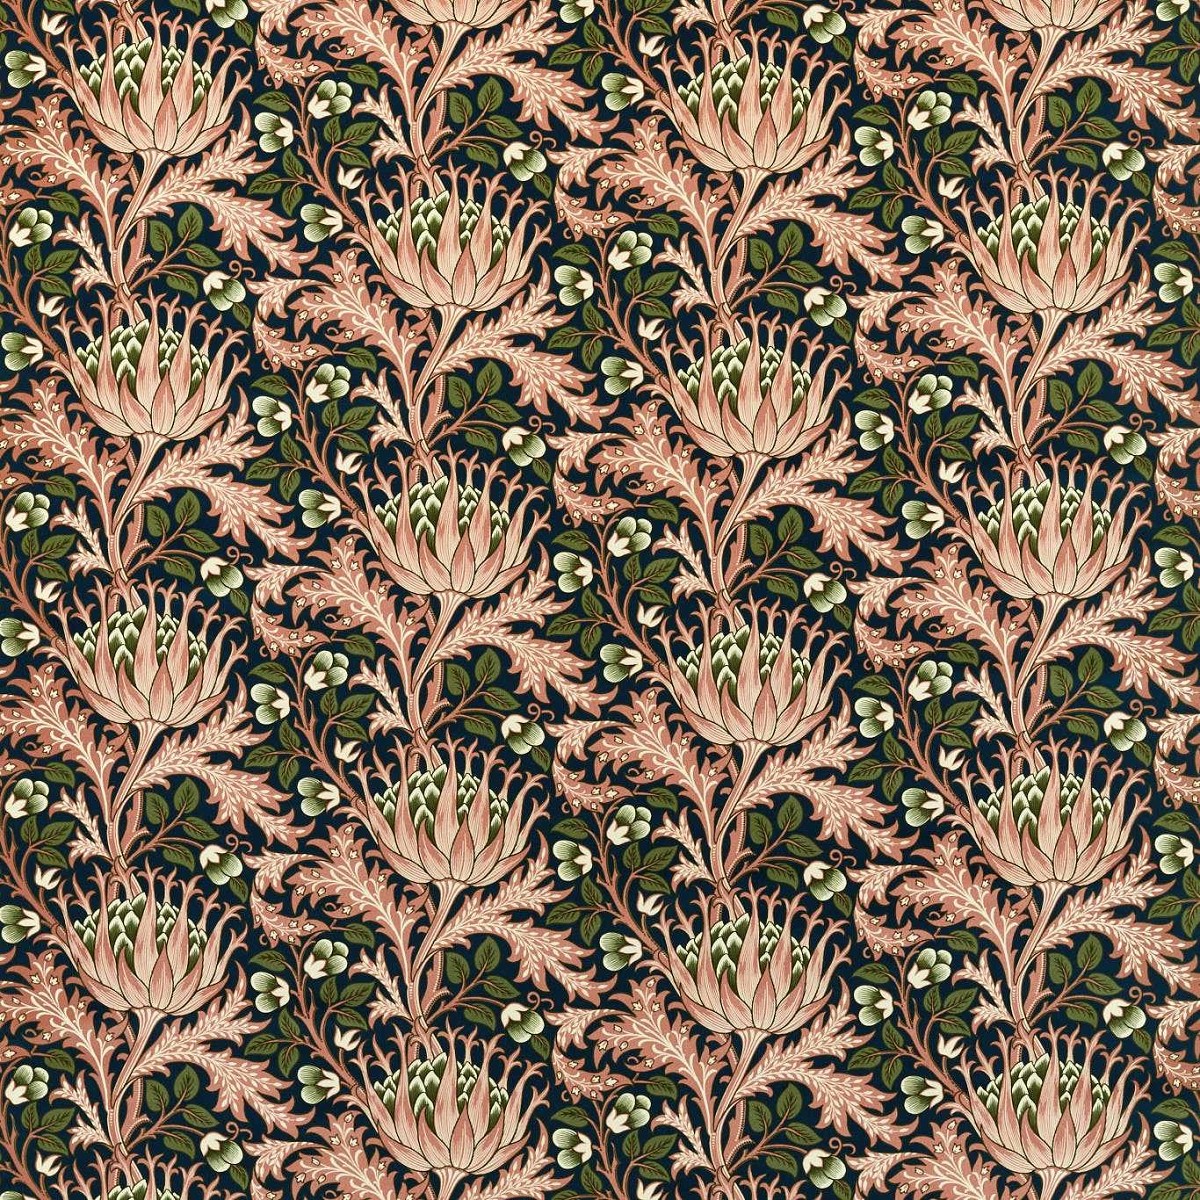 Artichoke Velvet Inky Fingers/Blush Fabric by William Morris & Co.